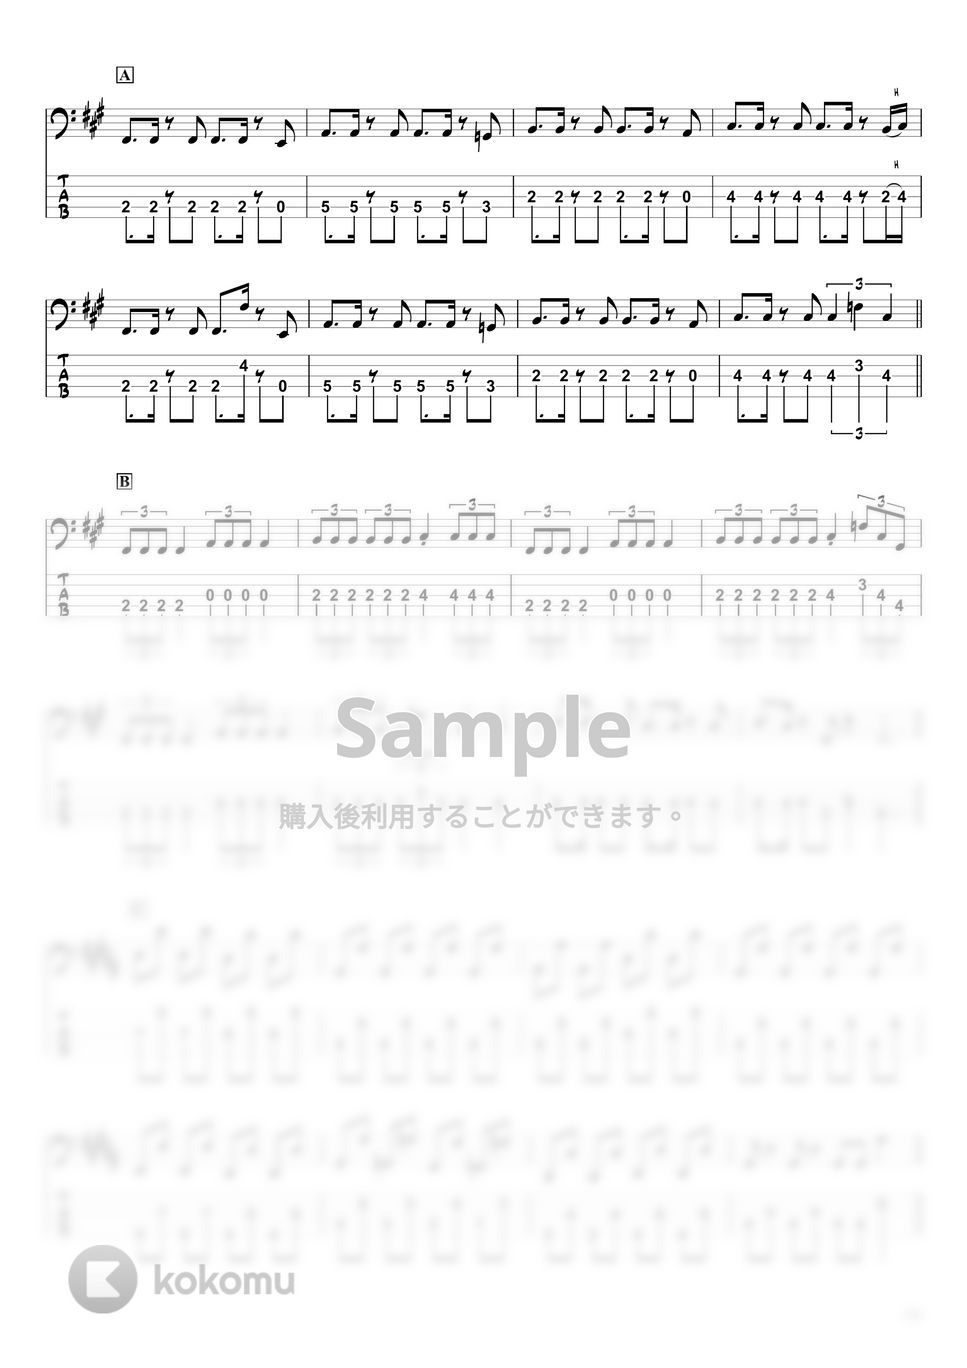 かいりきベア - ダーリンダンス (ベースTAB譜☆5弦ベース対応) by swbass